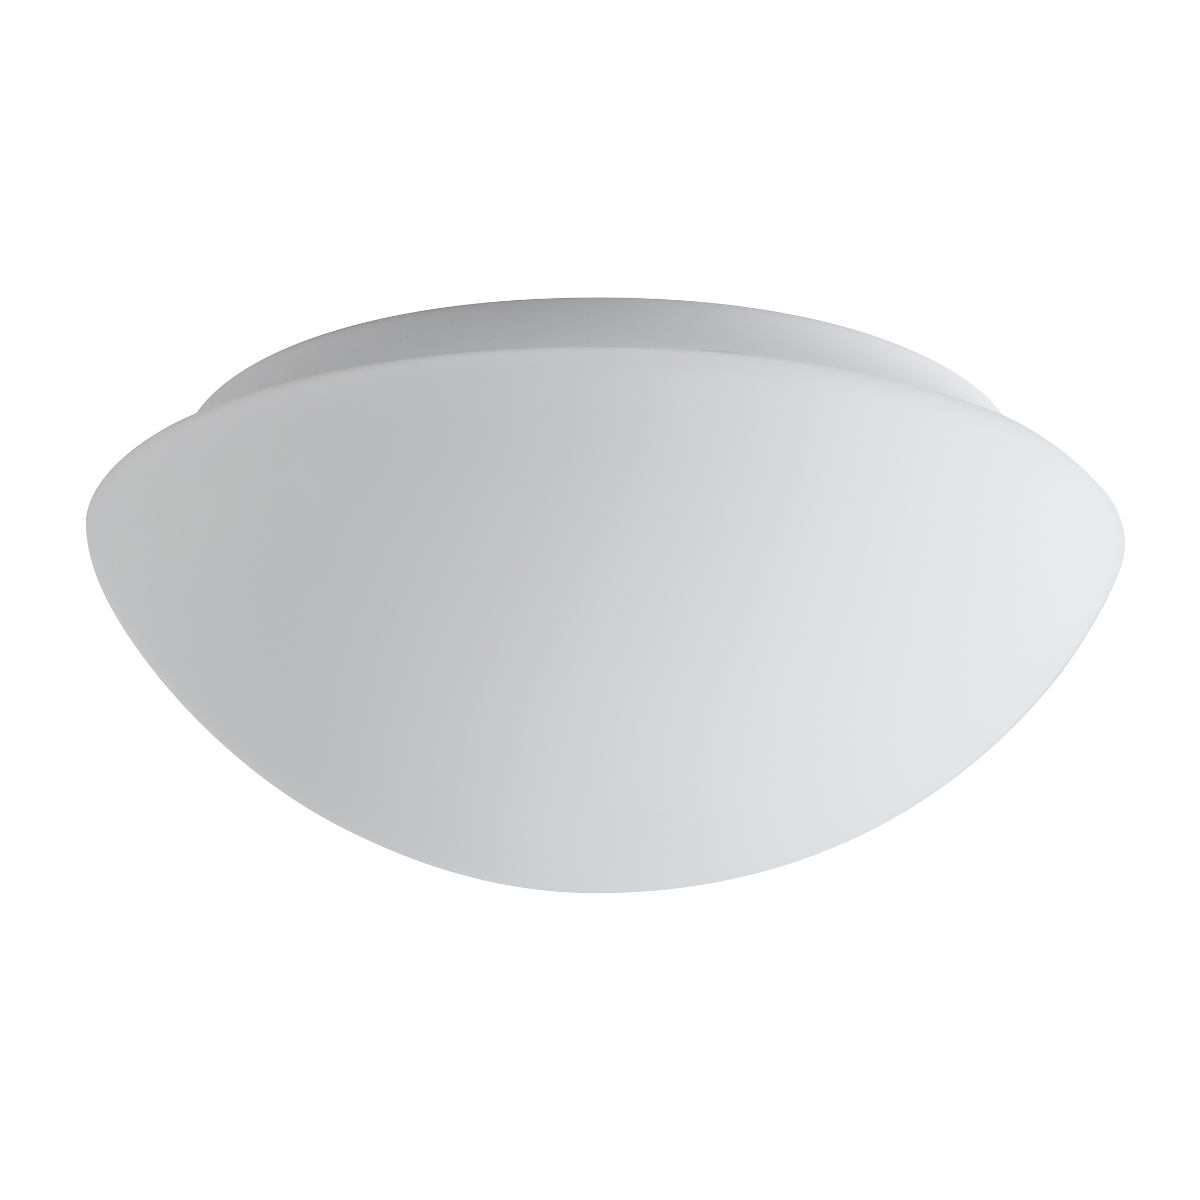 Funktionale Opalglas-Deckenleuchte AURORA LED, Ø 20–60 cm: Durchmesser 25 cm